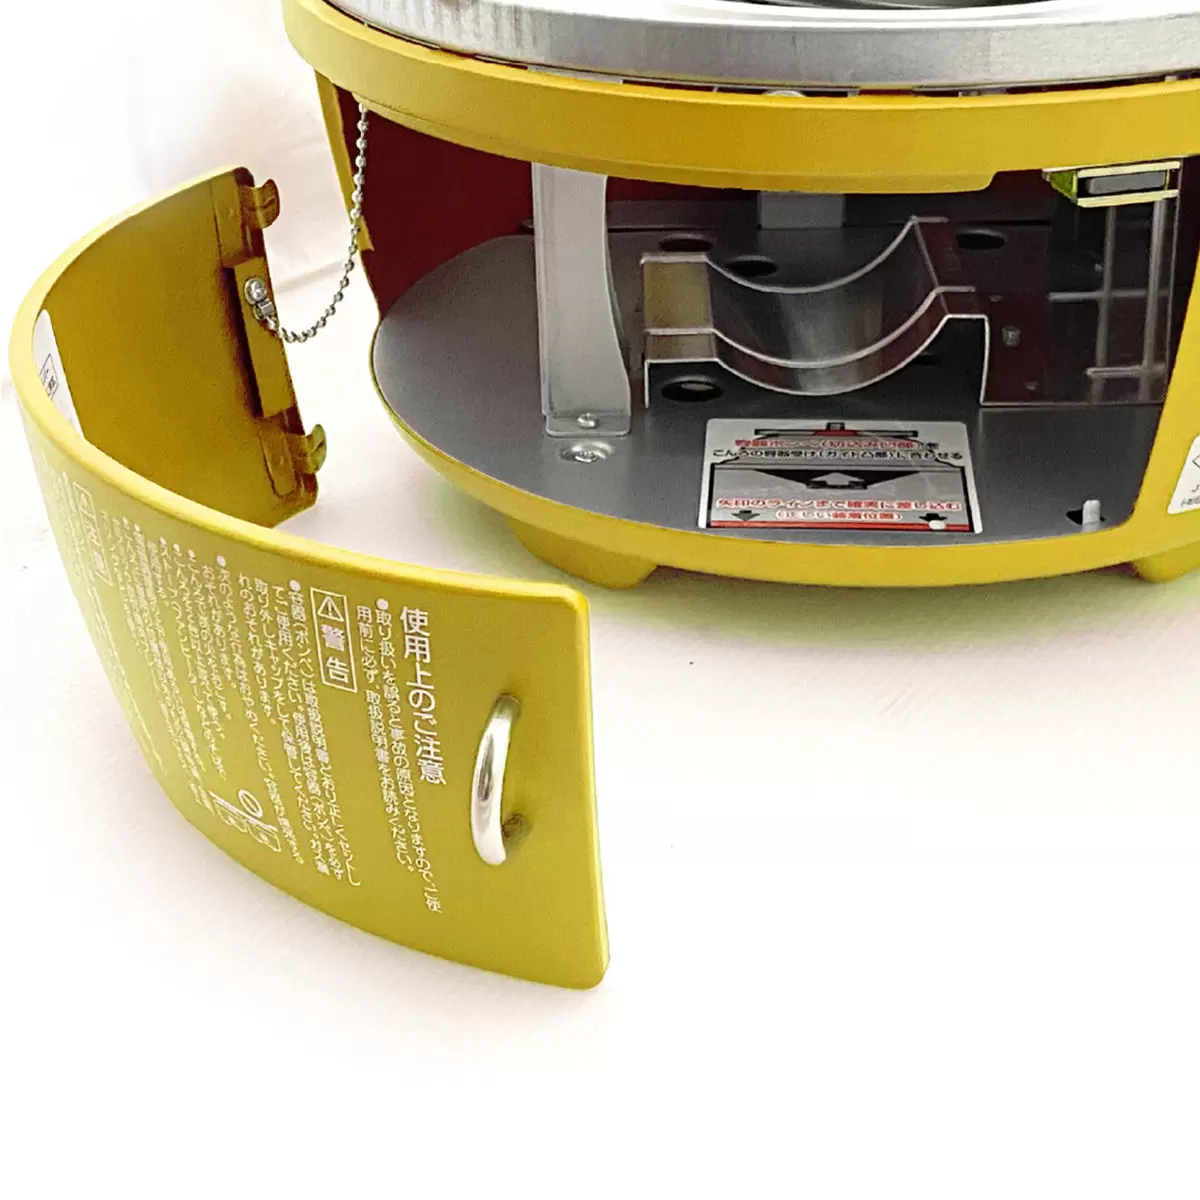 千石阿拉丁 2.8kW 可攜式卡式燒烤爐 SAG-HB01Y 黃色